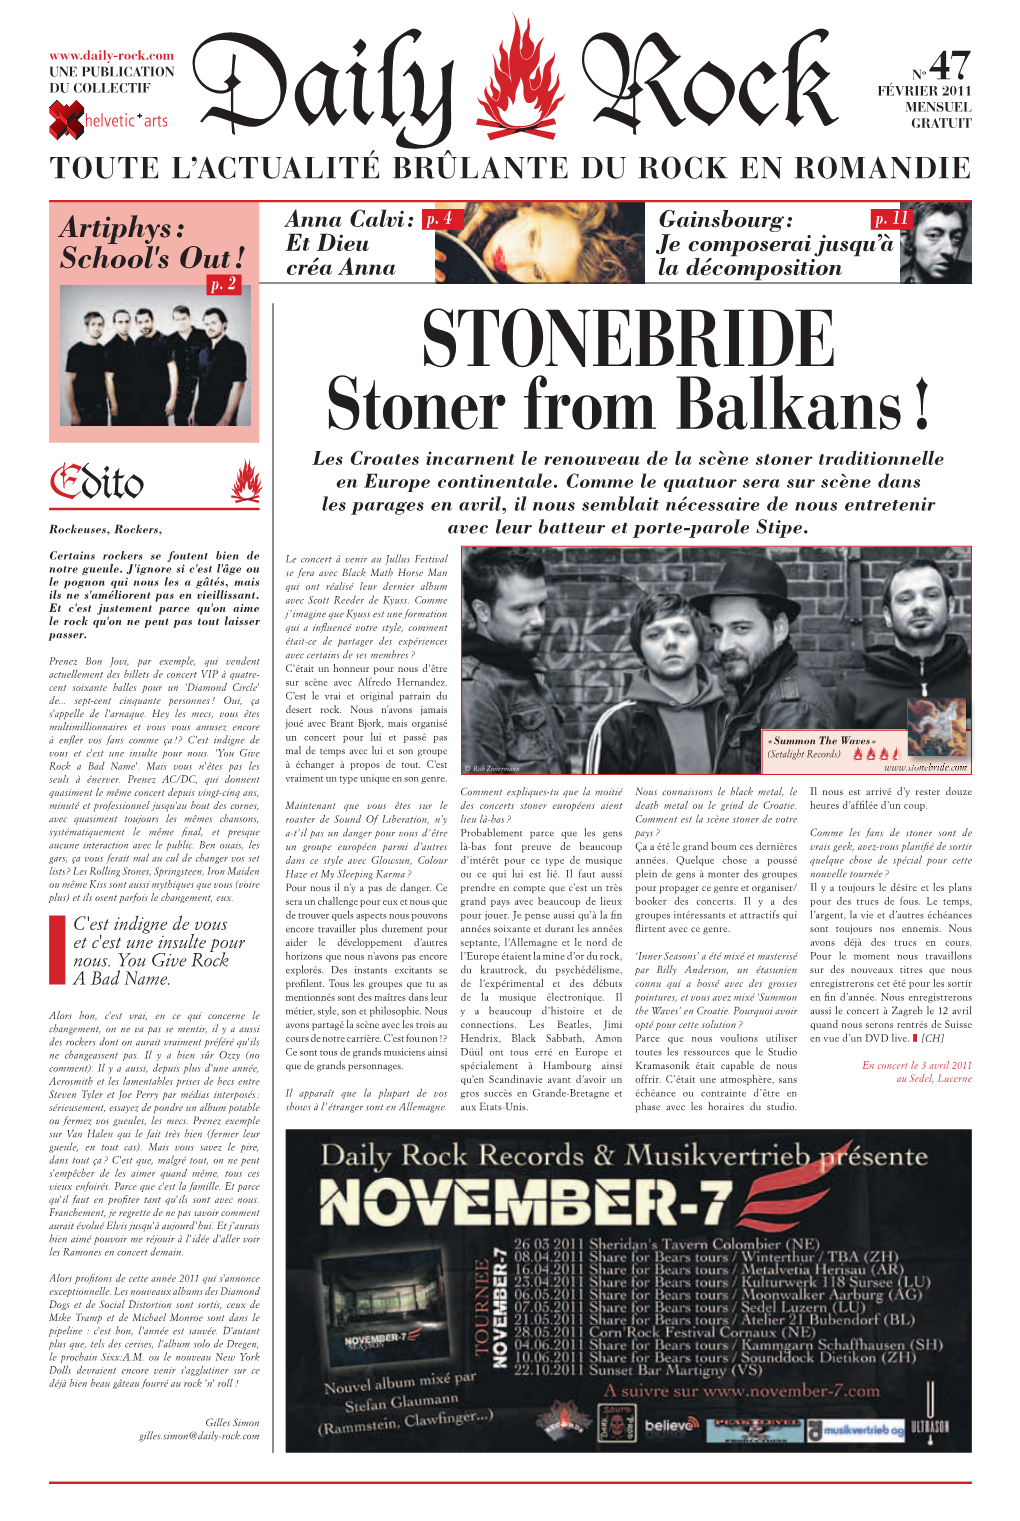 Stoner from Balkans ! Les Croates Incarnent Le Renouveau De La Scène Stoner Traditionnelle En Europe Continentale